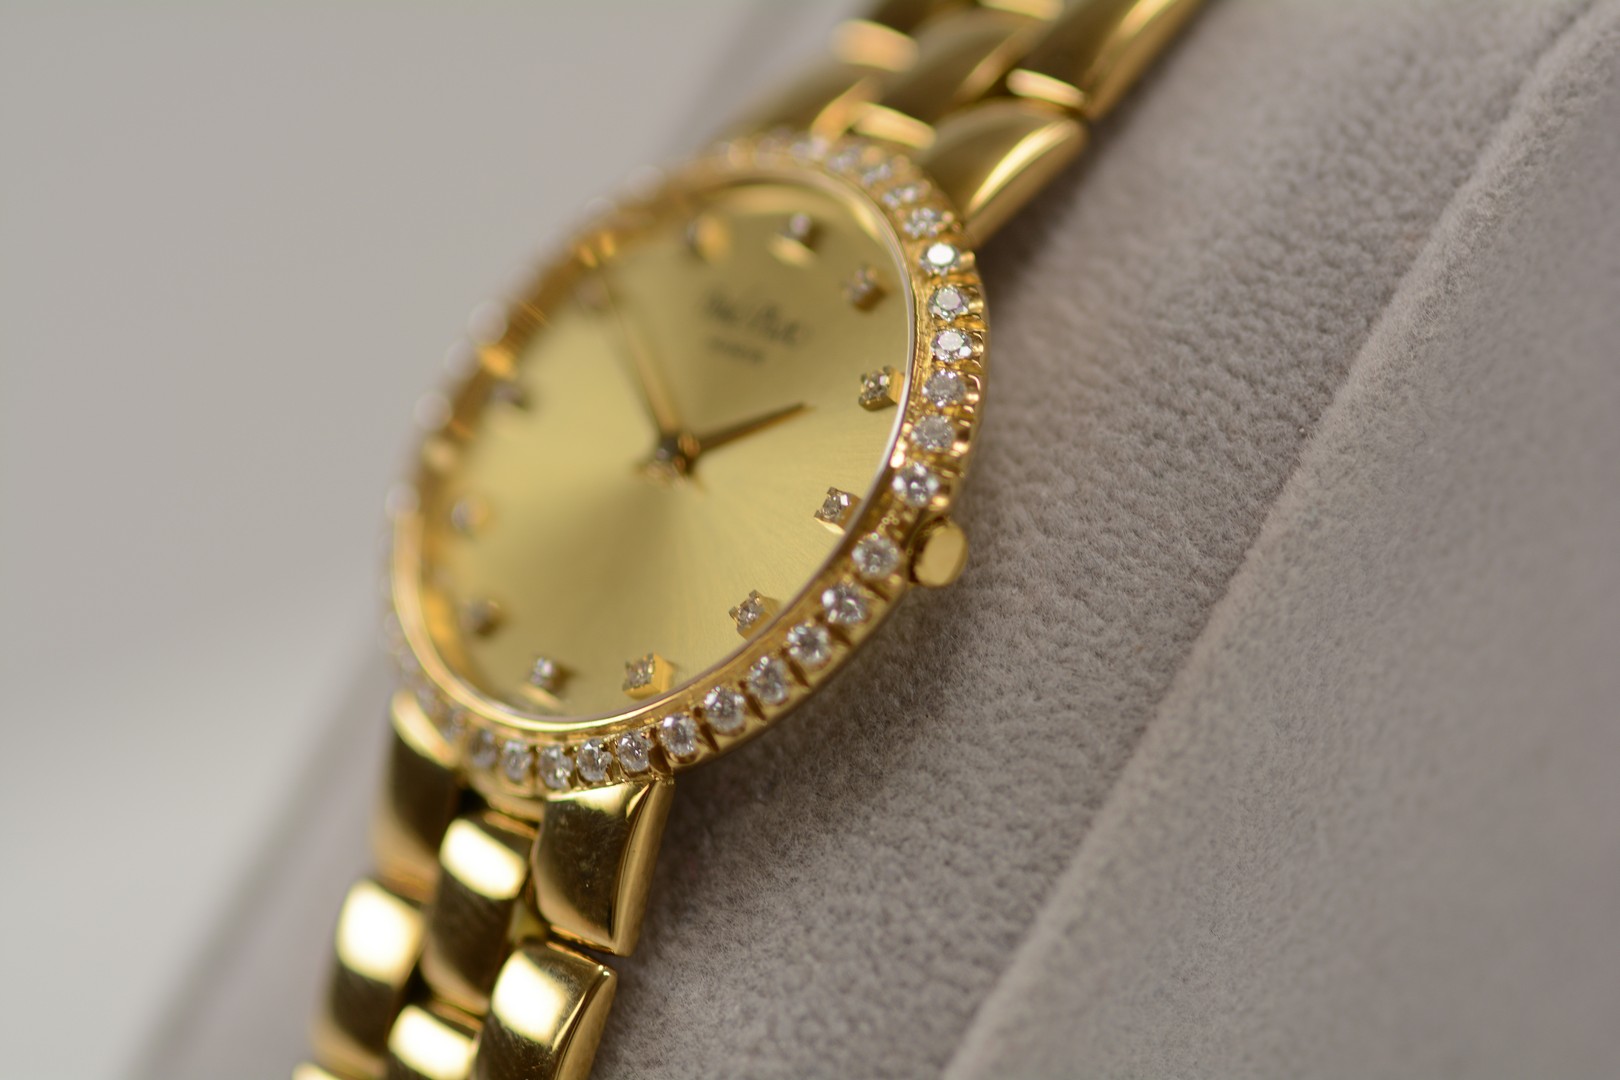 Paul Picot / Diamond - Lady's Yellow gold Wrist Watch - Image 9 of 15